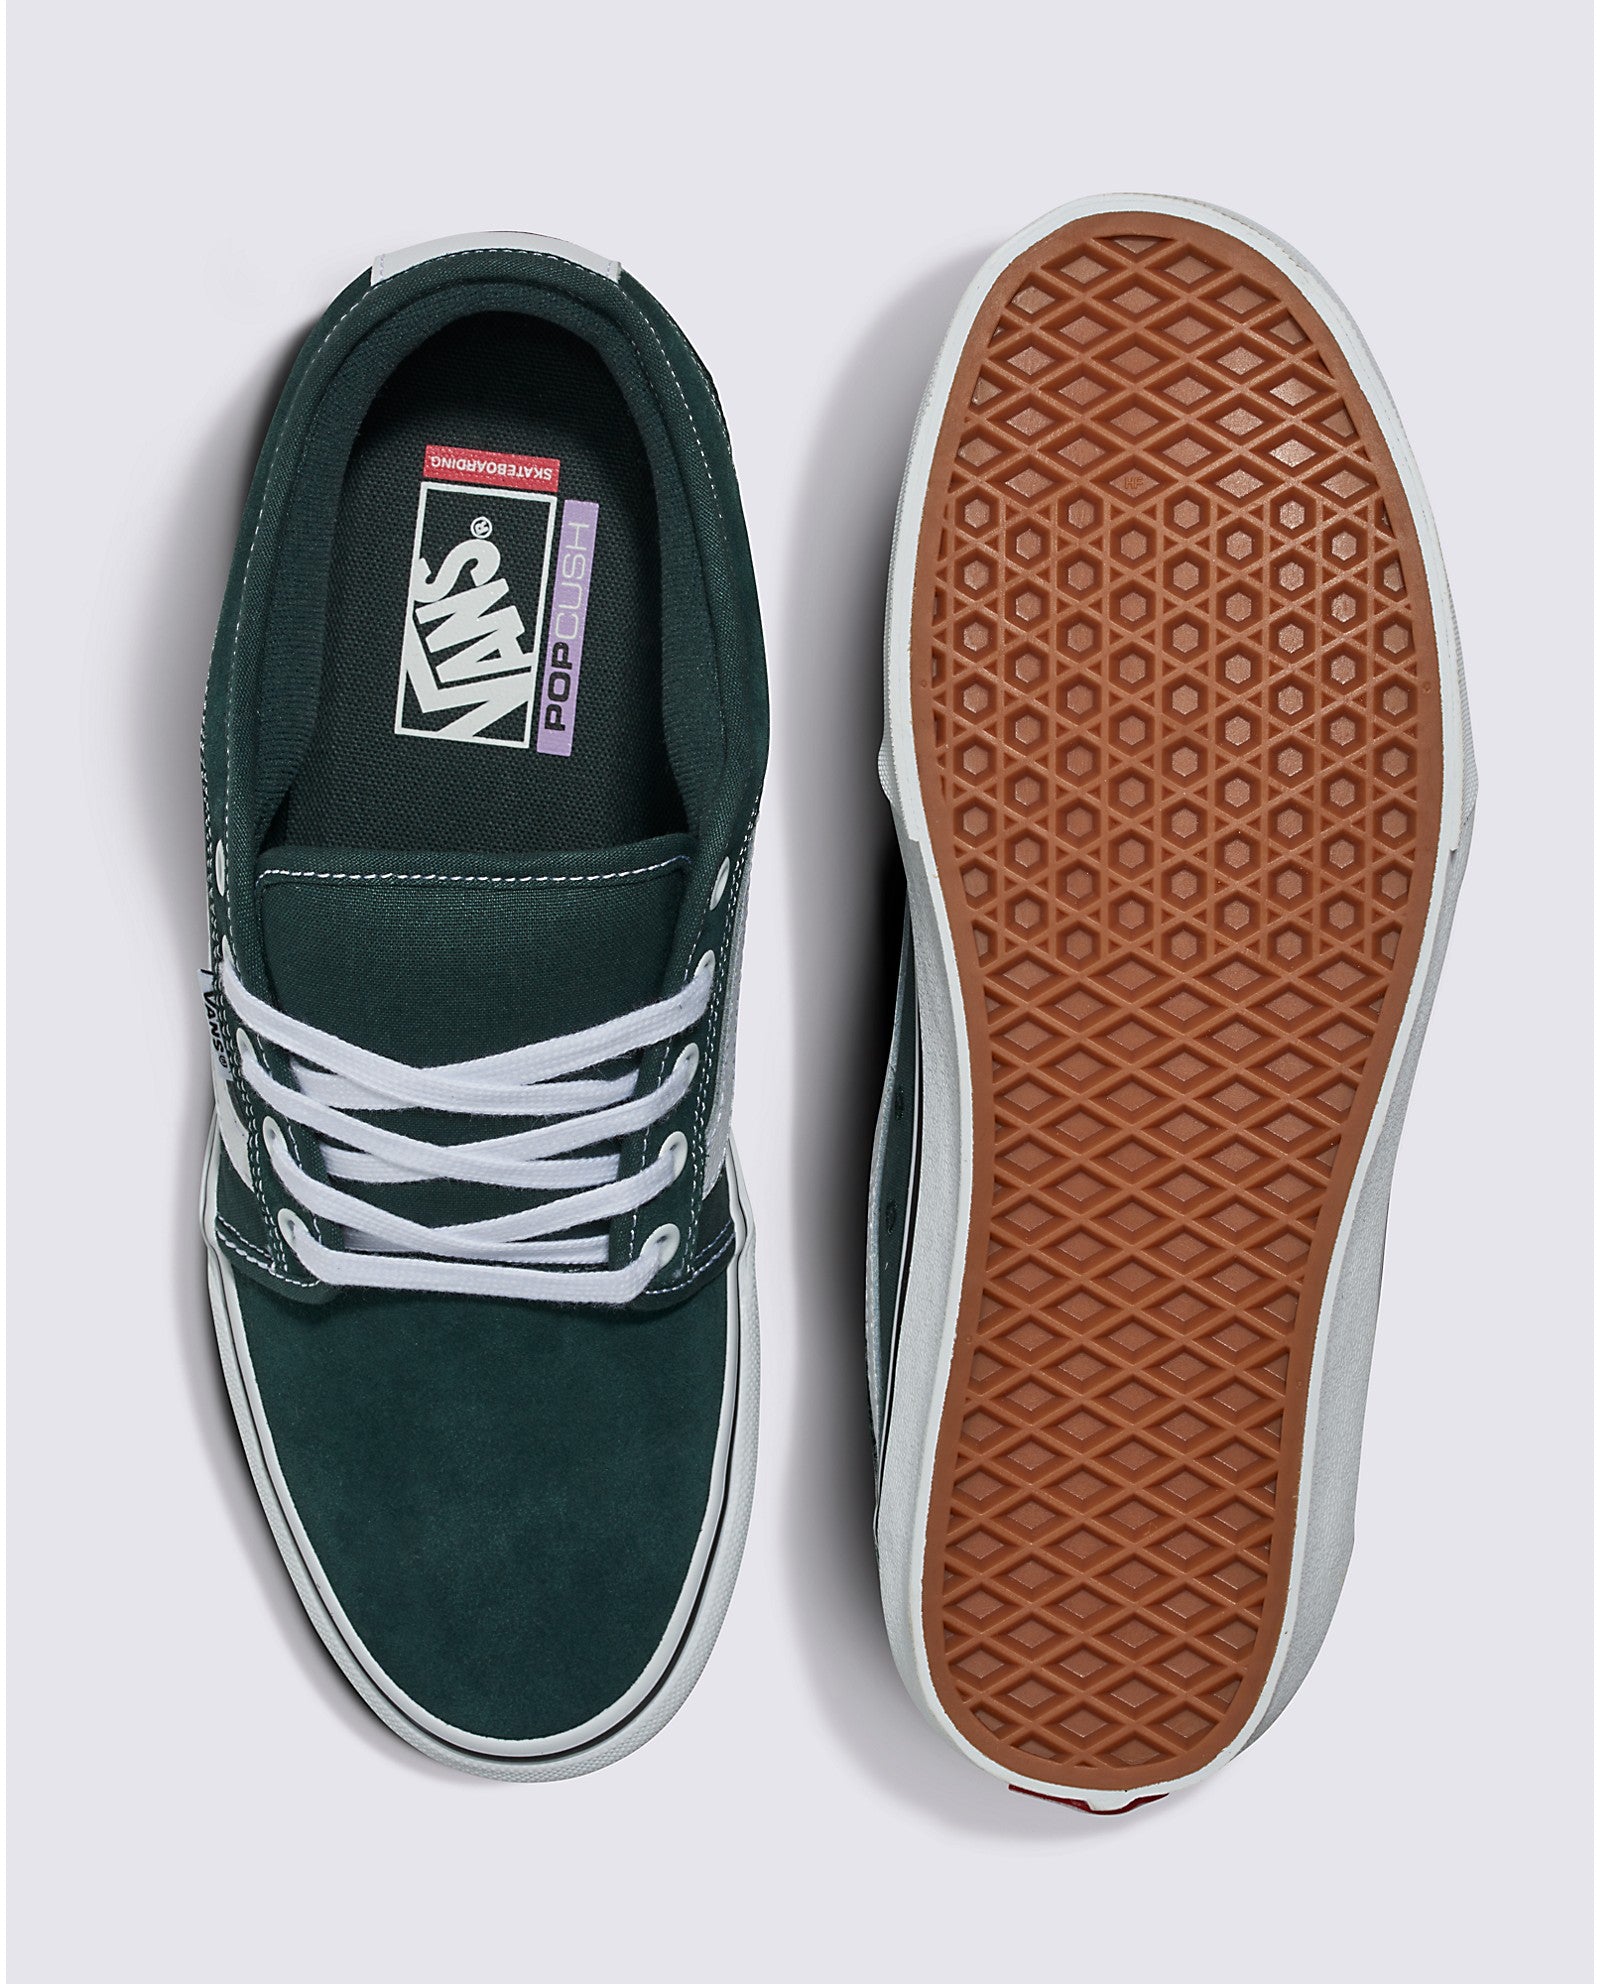 Green Gables Chukka Low Sidestripe Vans Skate Shoe Top/Bottom